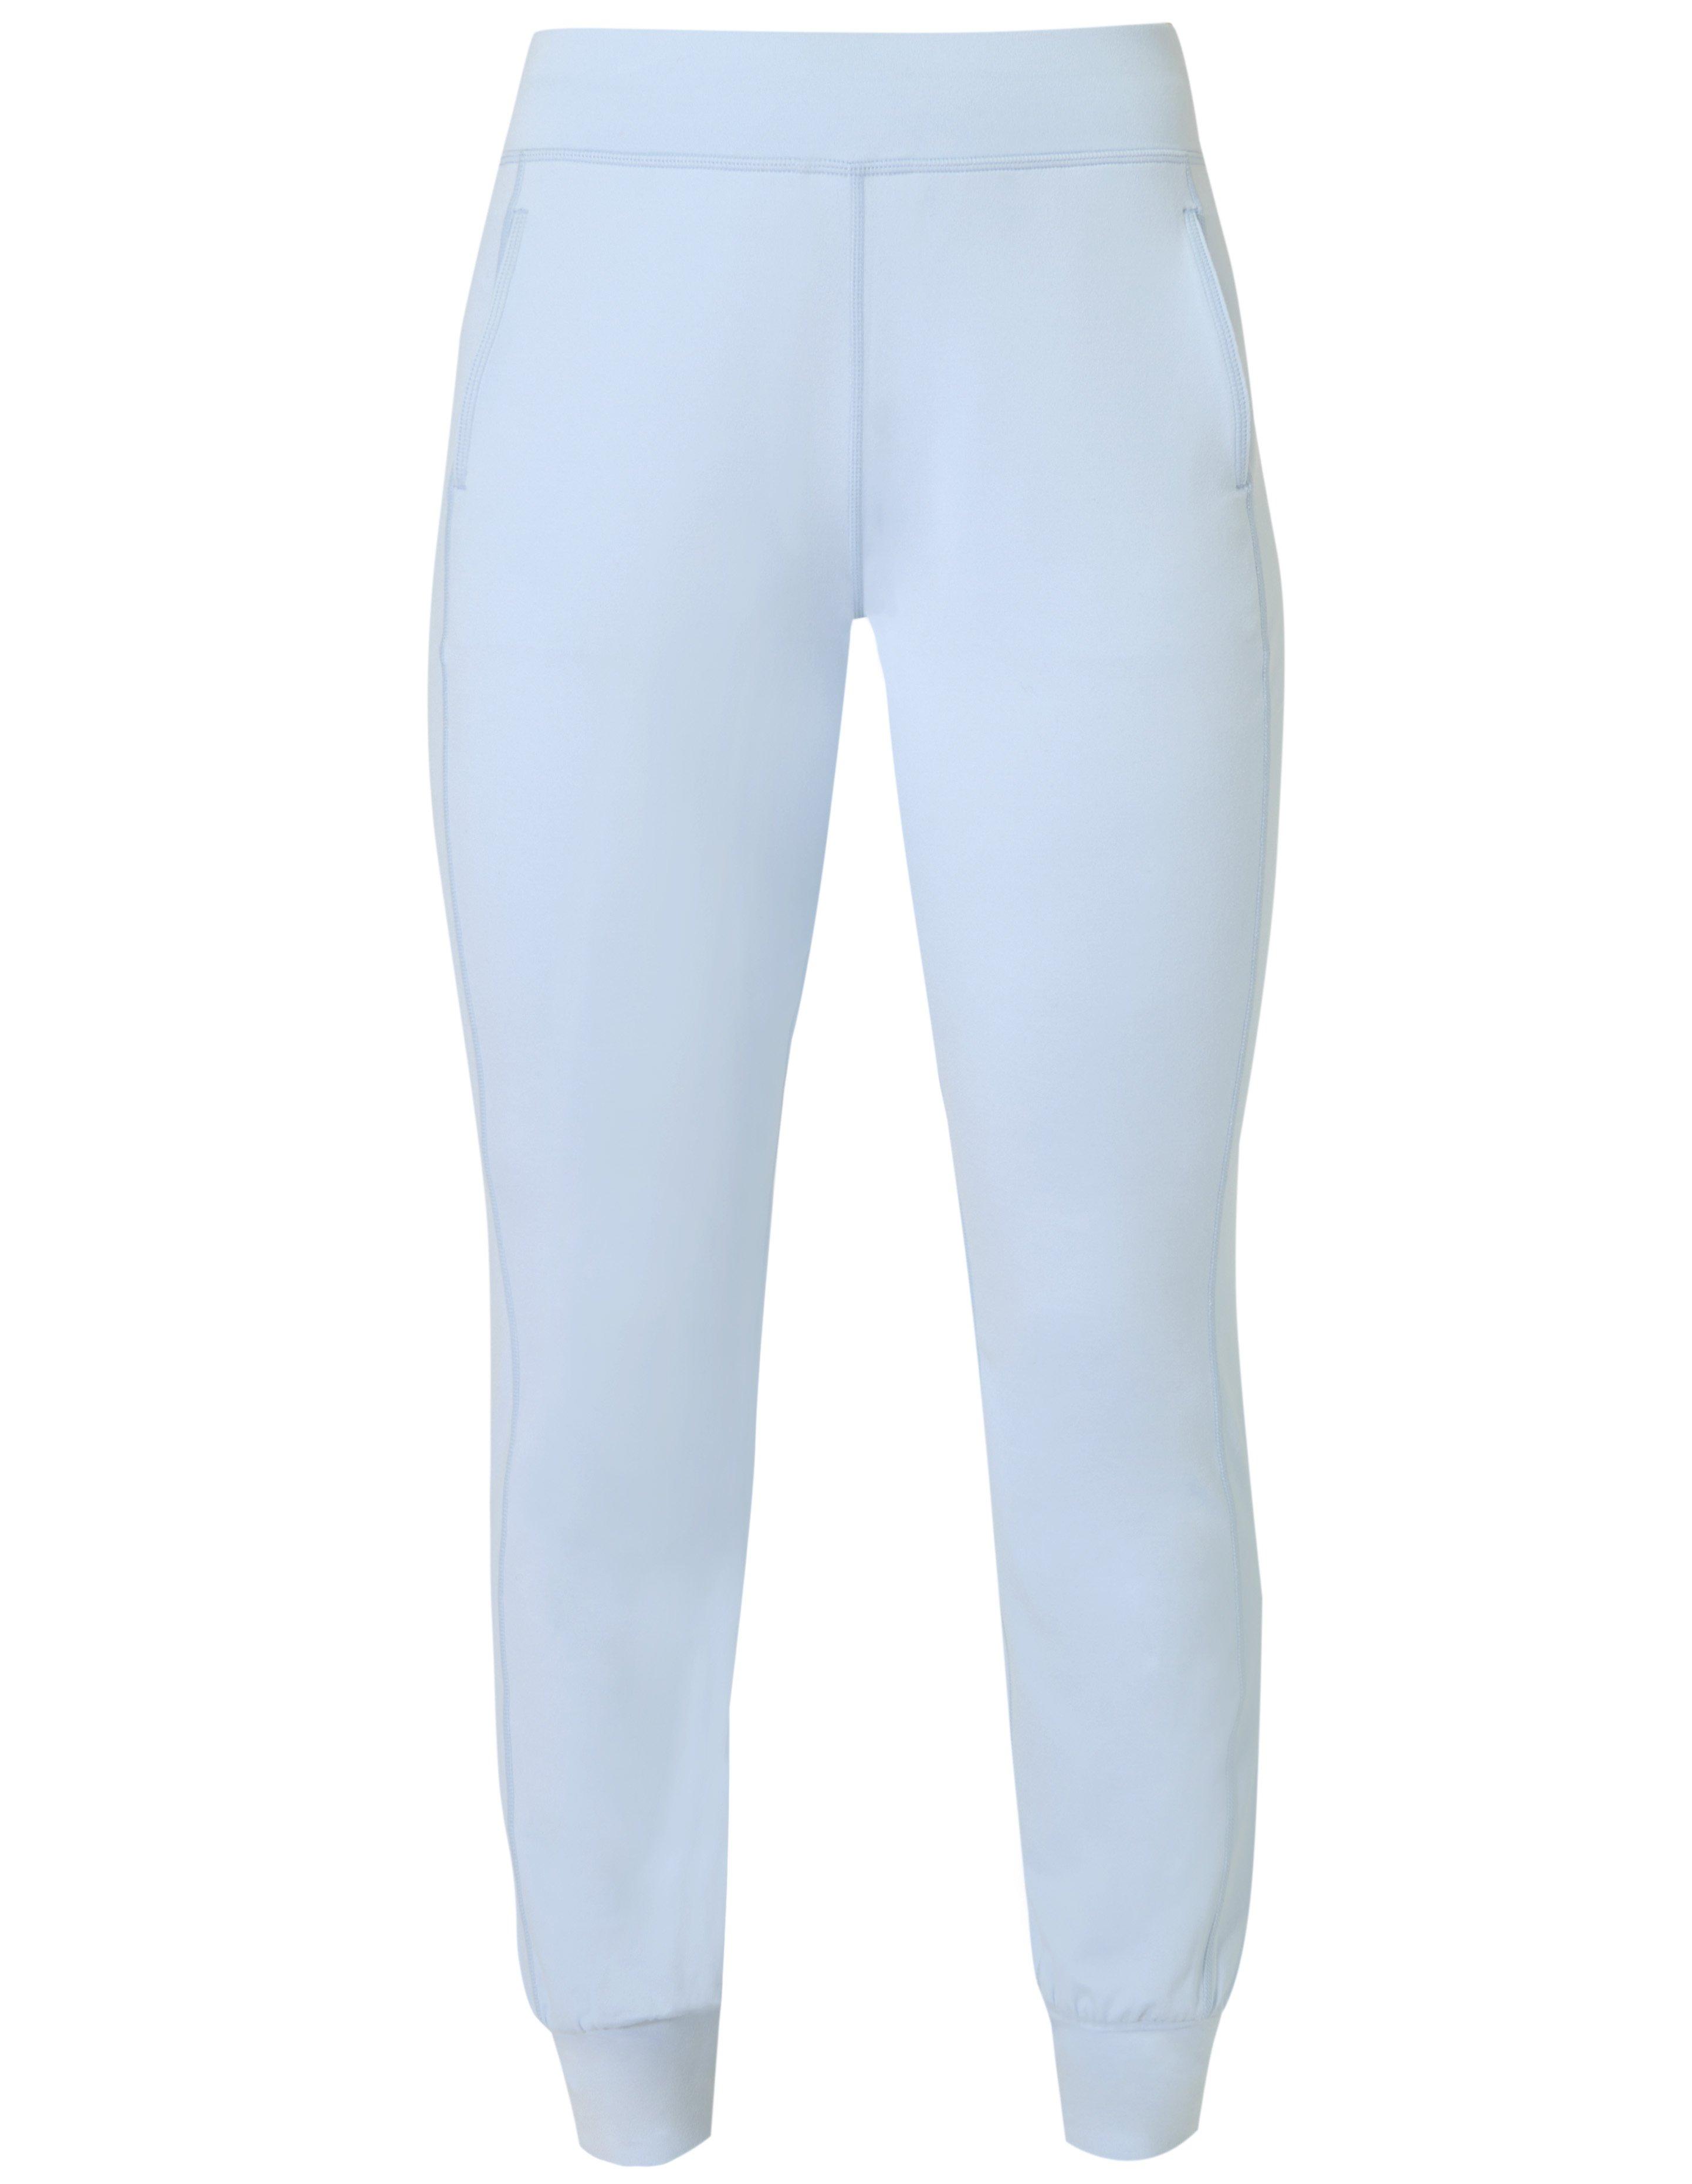 Gary Yoga Pants - Aluminium Blue  Women's Trousers & Yoga Pants